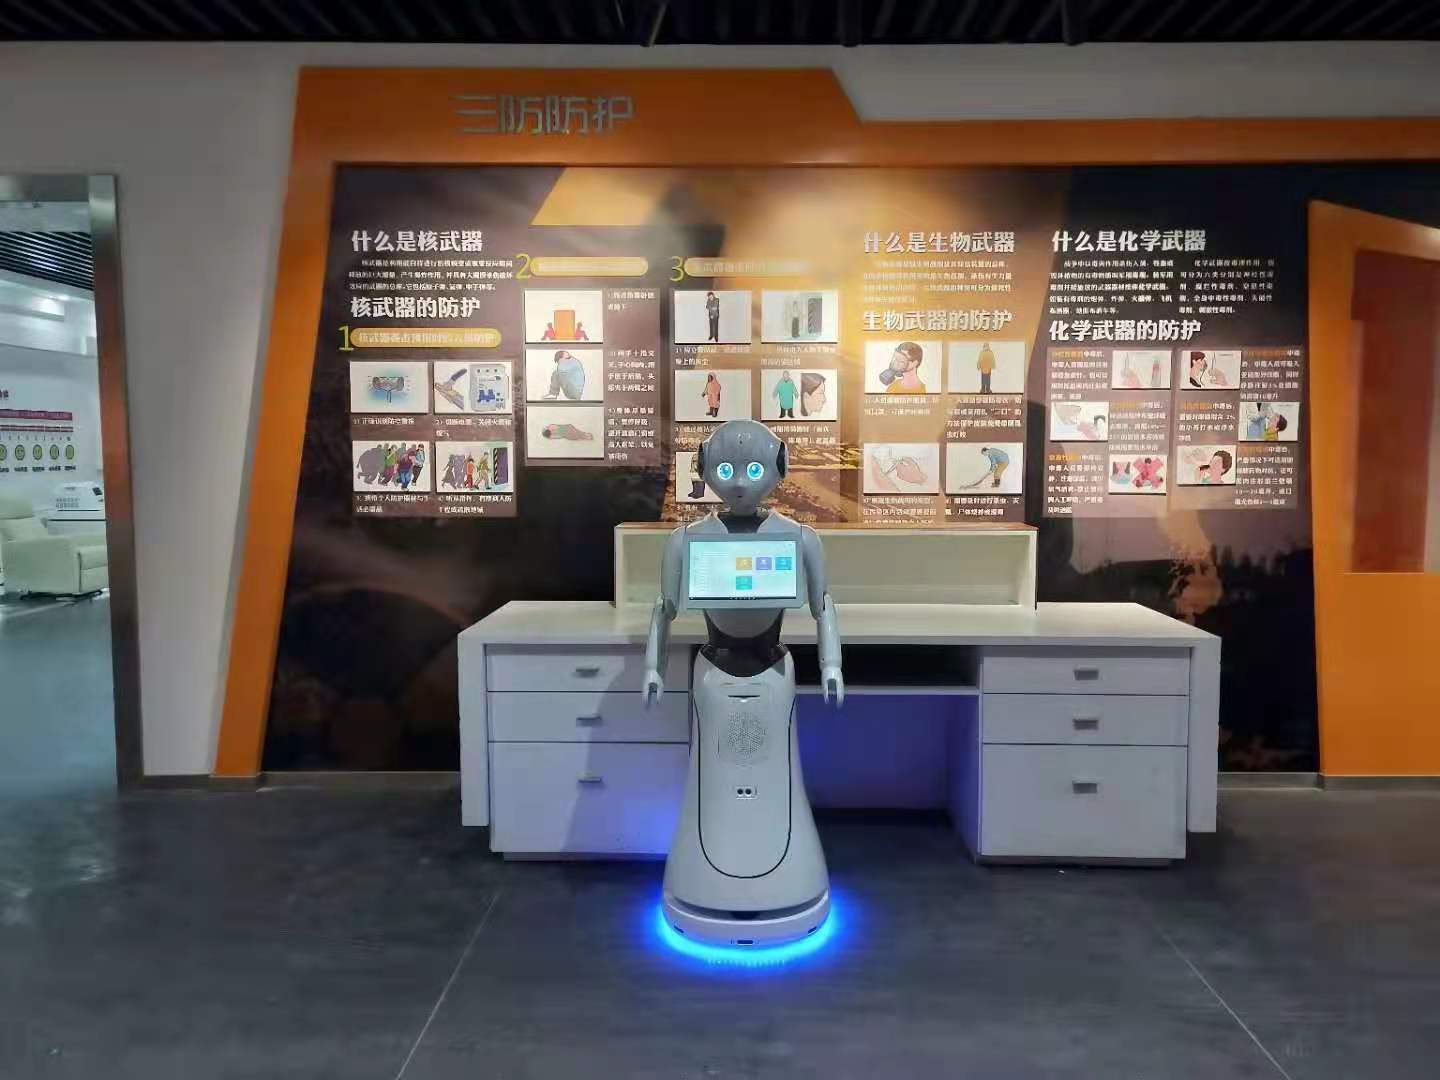 宁波展馆讲解机器人自主导览